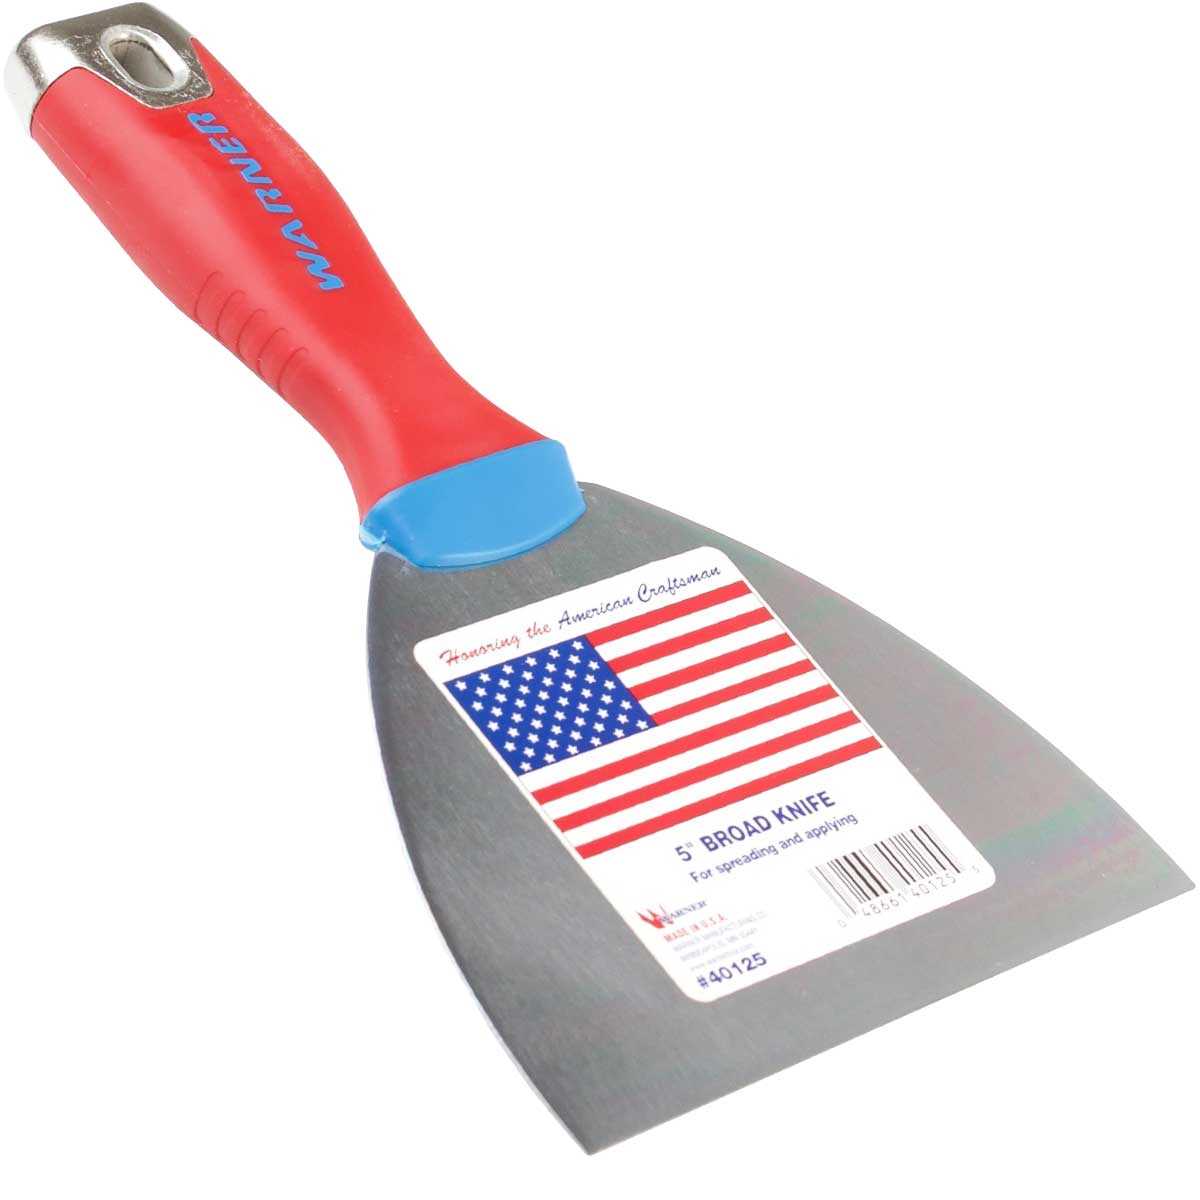 Warner 5" American Pride Knife